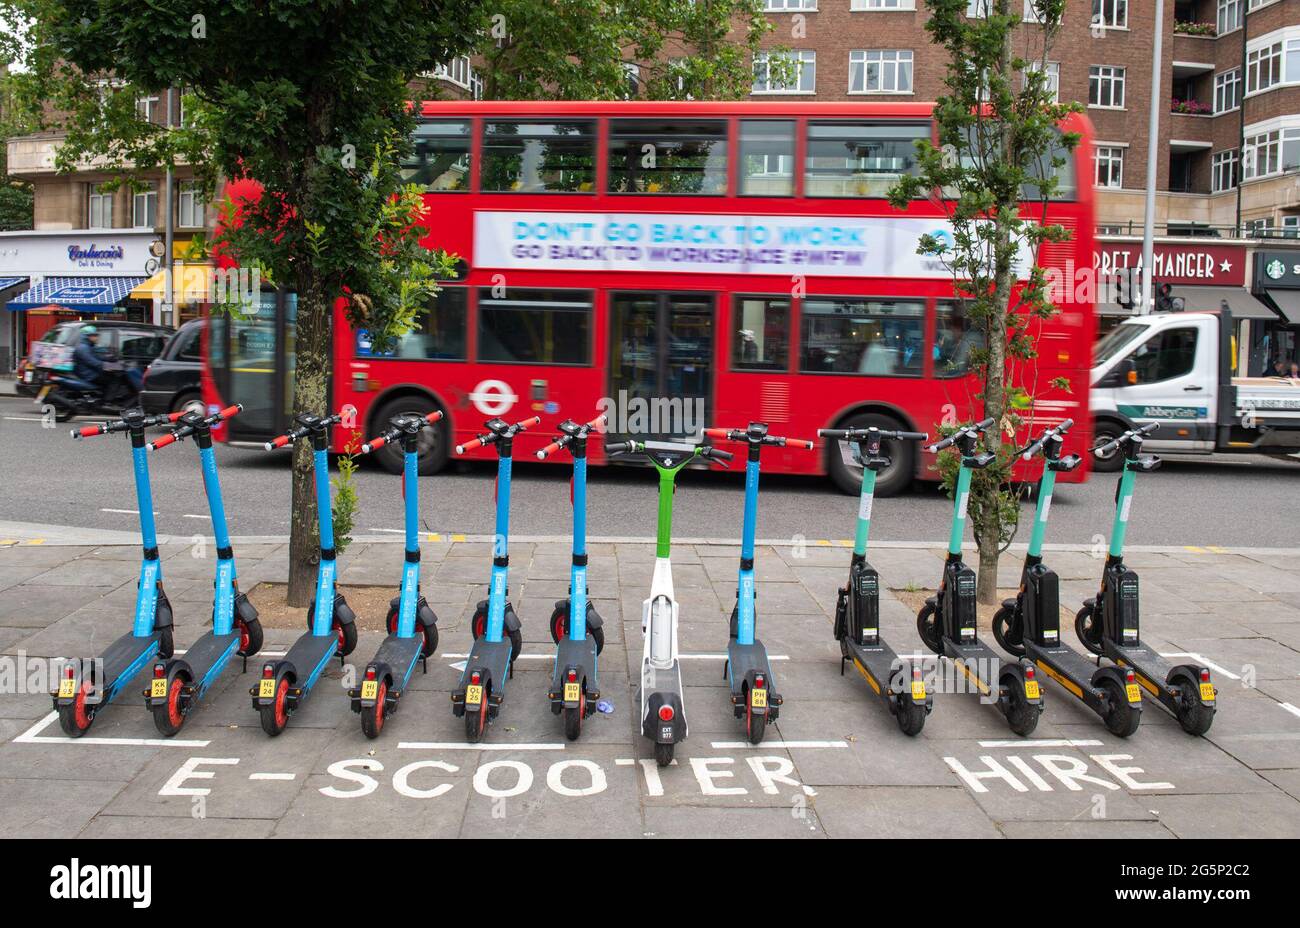 Allgemeine Ansicht von E-Scootern, die von Dott, Lime und Tier an einem E-Scooter-Verleih in Kensington, West London betrieben werden Bilddatum: Dienstag, 29. Juni 2021. Stockfoto